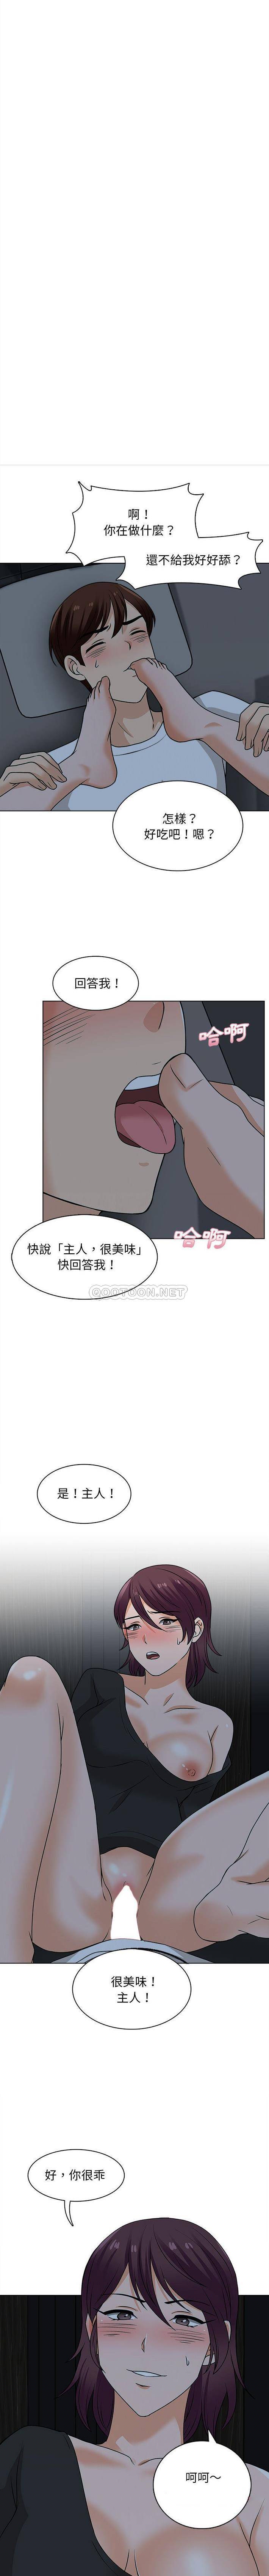 韩国污漫画 幸福公寓 第20话 3